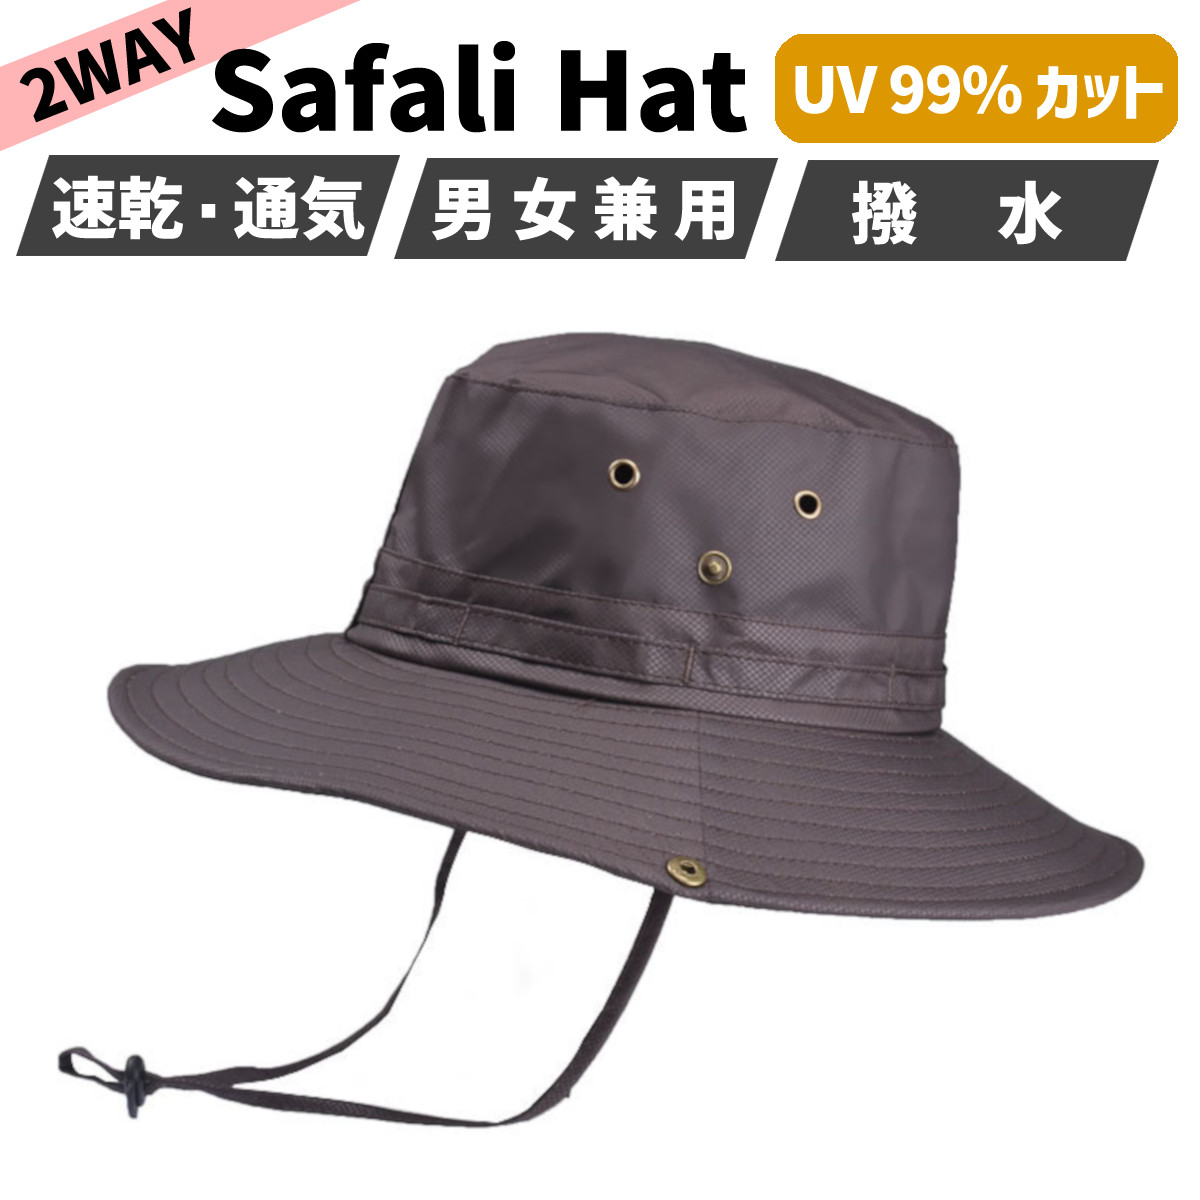 時間指定不可 サファリハット メンズ レディース UV バケット カット 撥水 つば広 大きい 帽子 ハット あご紐 財布、帽子、ファッション小物 